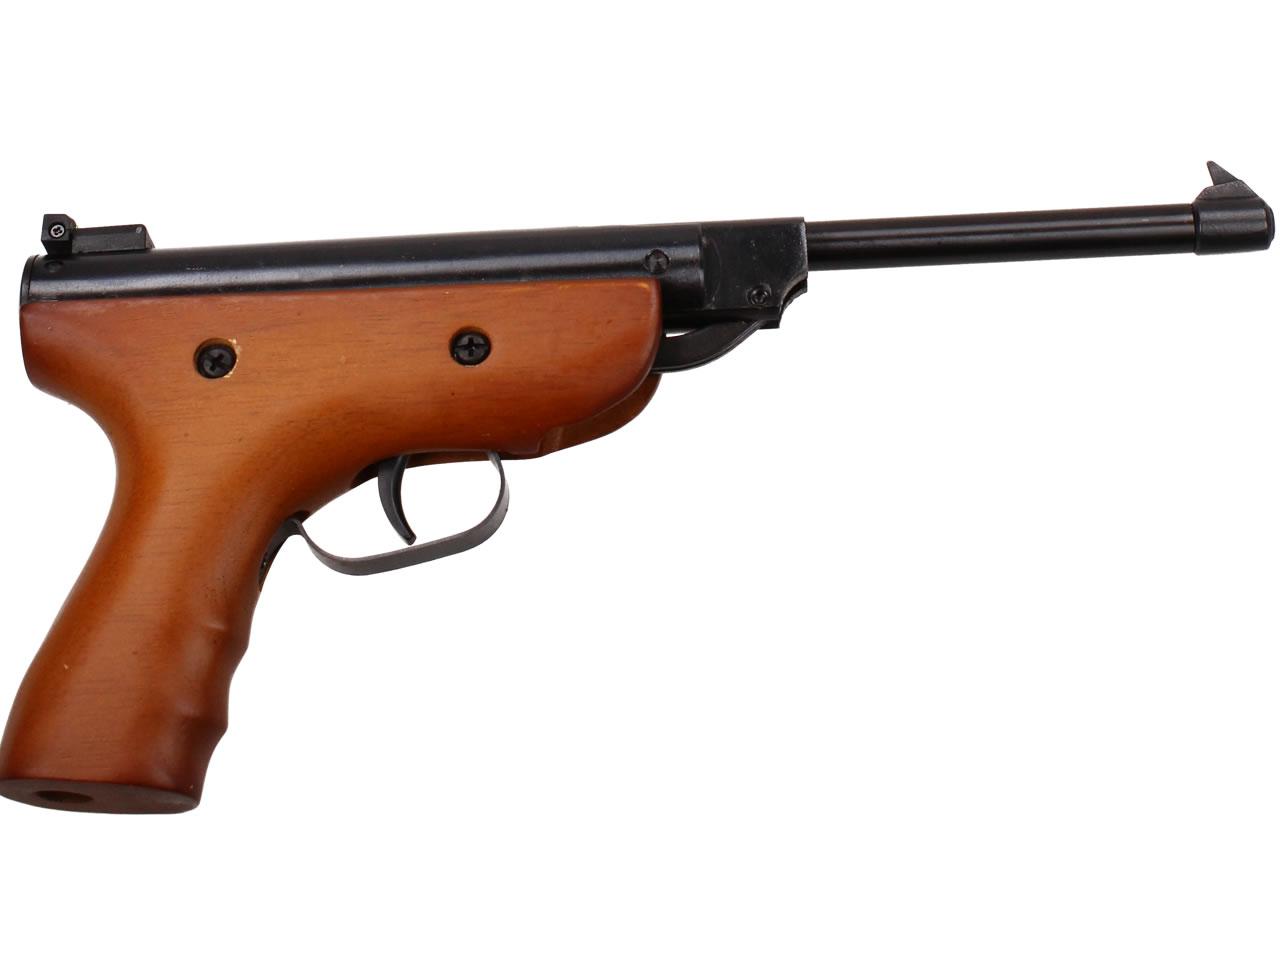 Vzduchová pistole jednoruční dřevěná (ráže 4,5mm)